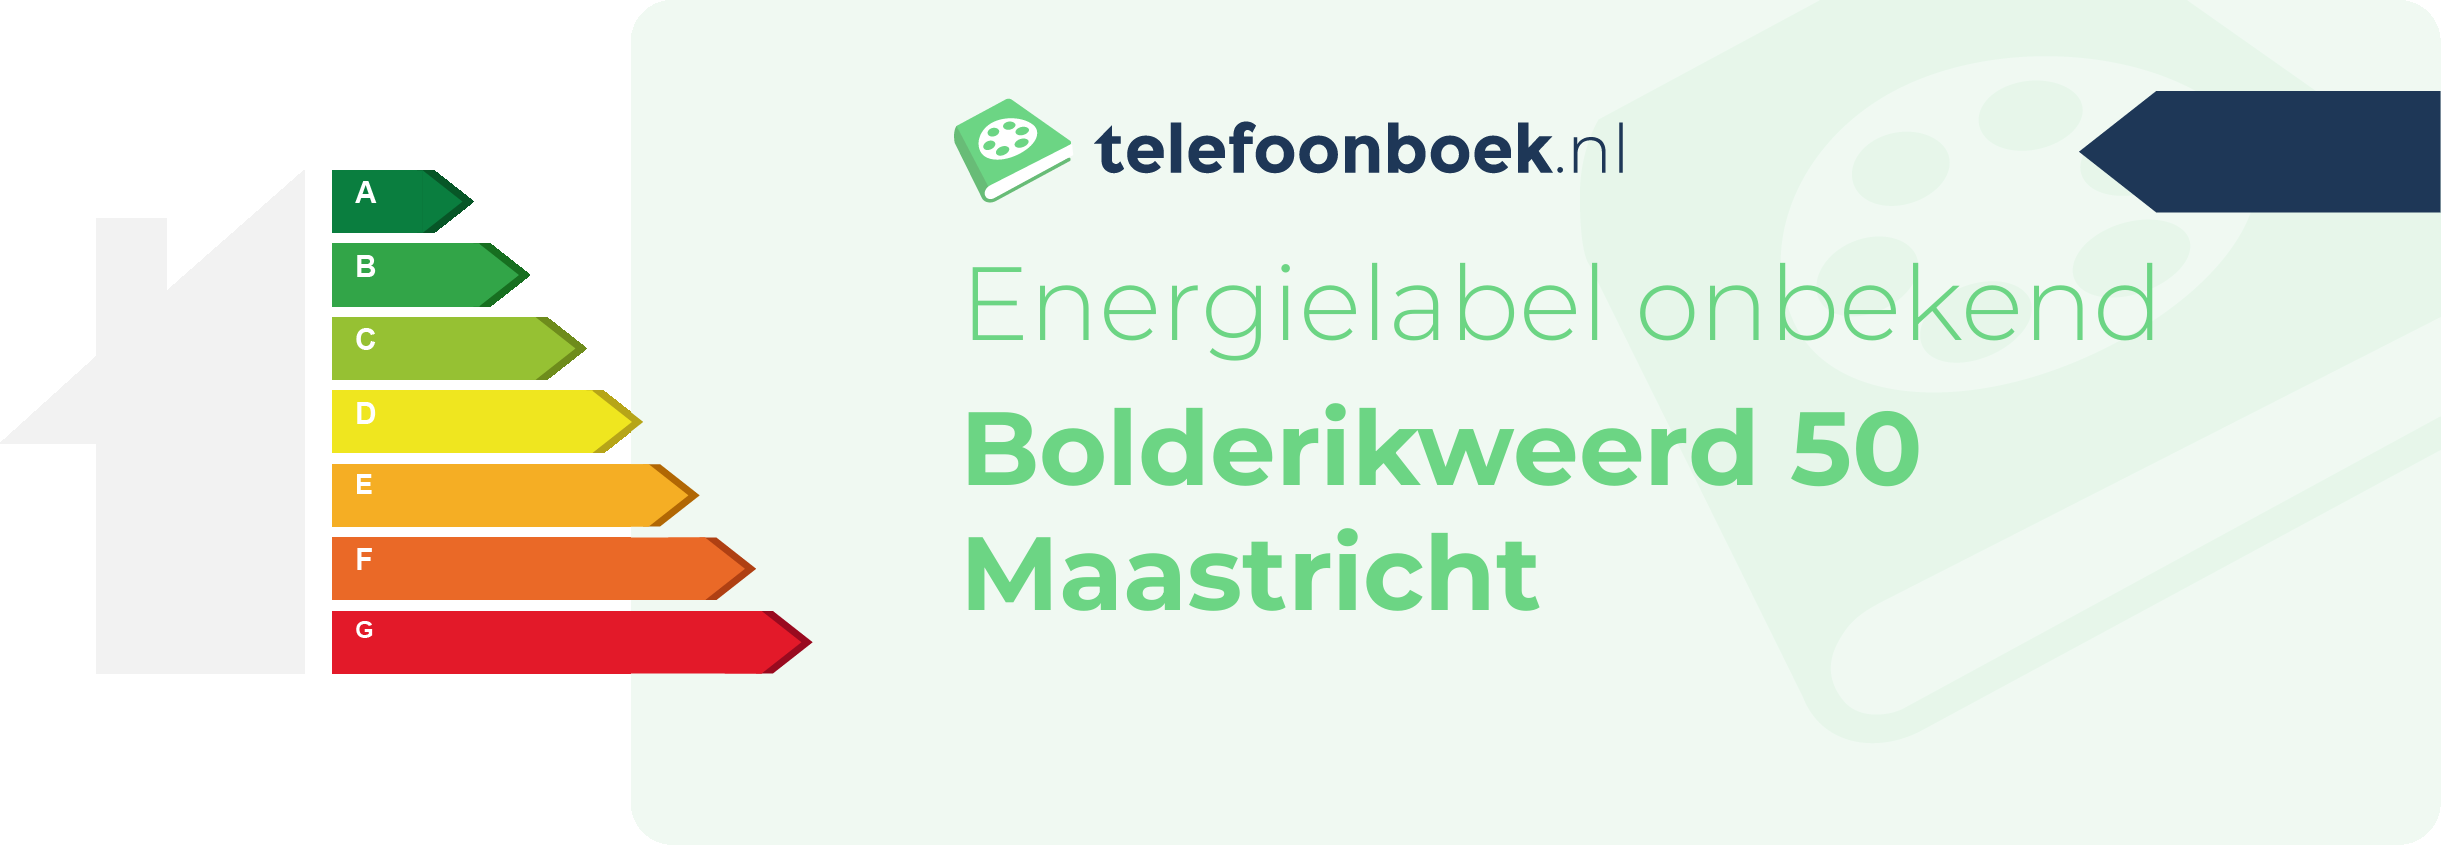 Energielabel Bolderikweerd 50 Maastricht